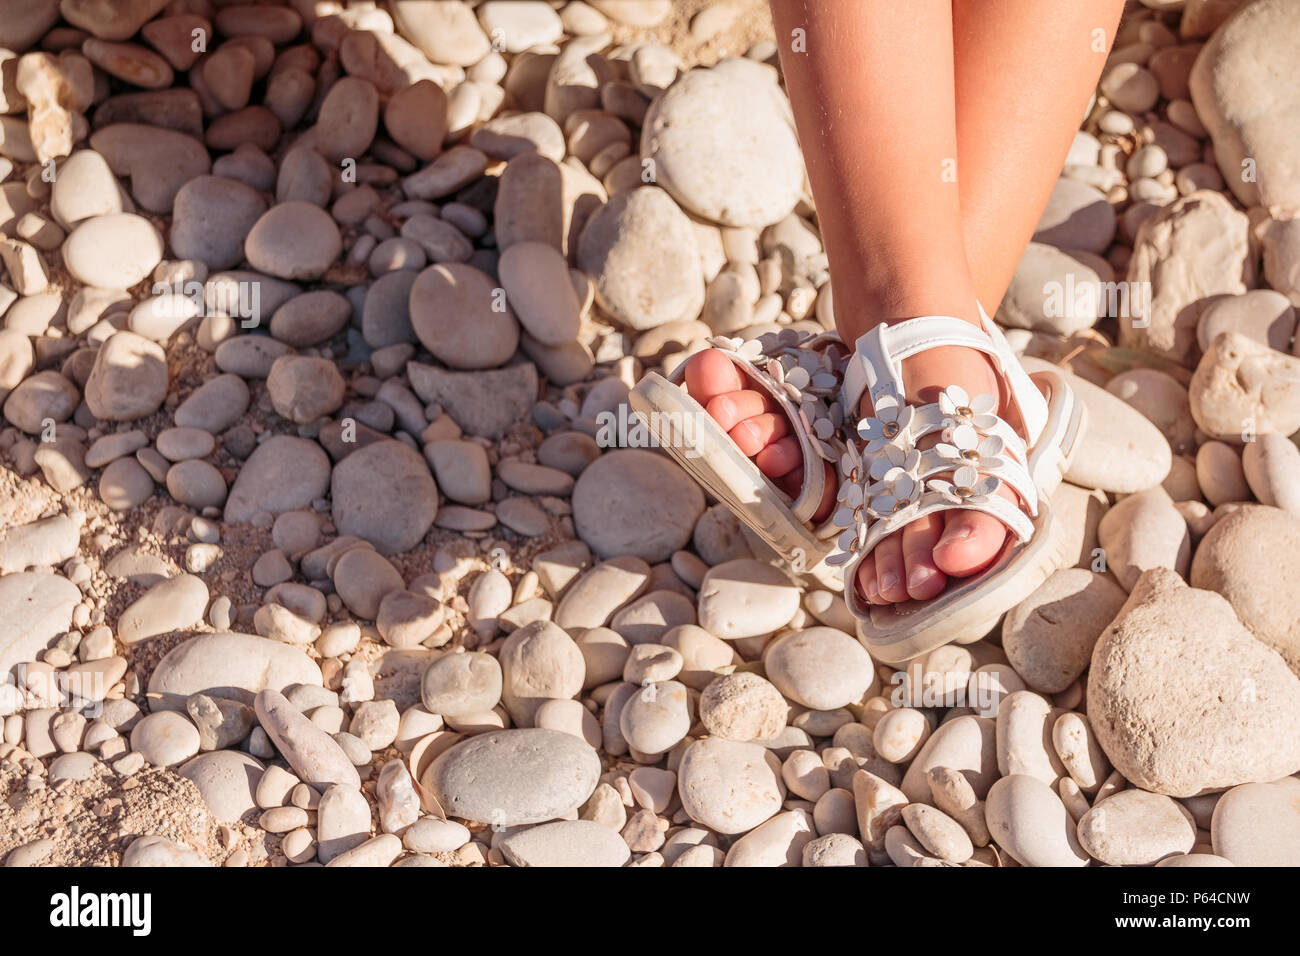 Kinder Sommer Sandalen. Baby Schuhe auf Steine Strand getrennt. Mädchen  weiß Mode Schuhe, Leder Sandale, Mokassins. Beine von einem kleinen Mädchen  in weißen Sandalen am Strand. Platz kopieren Stockfotografie - Alamy